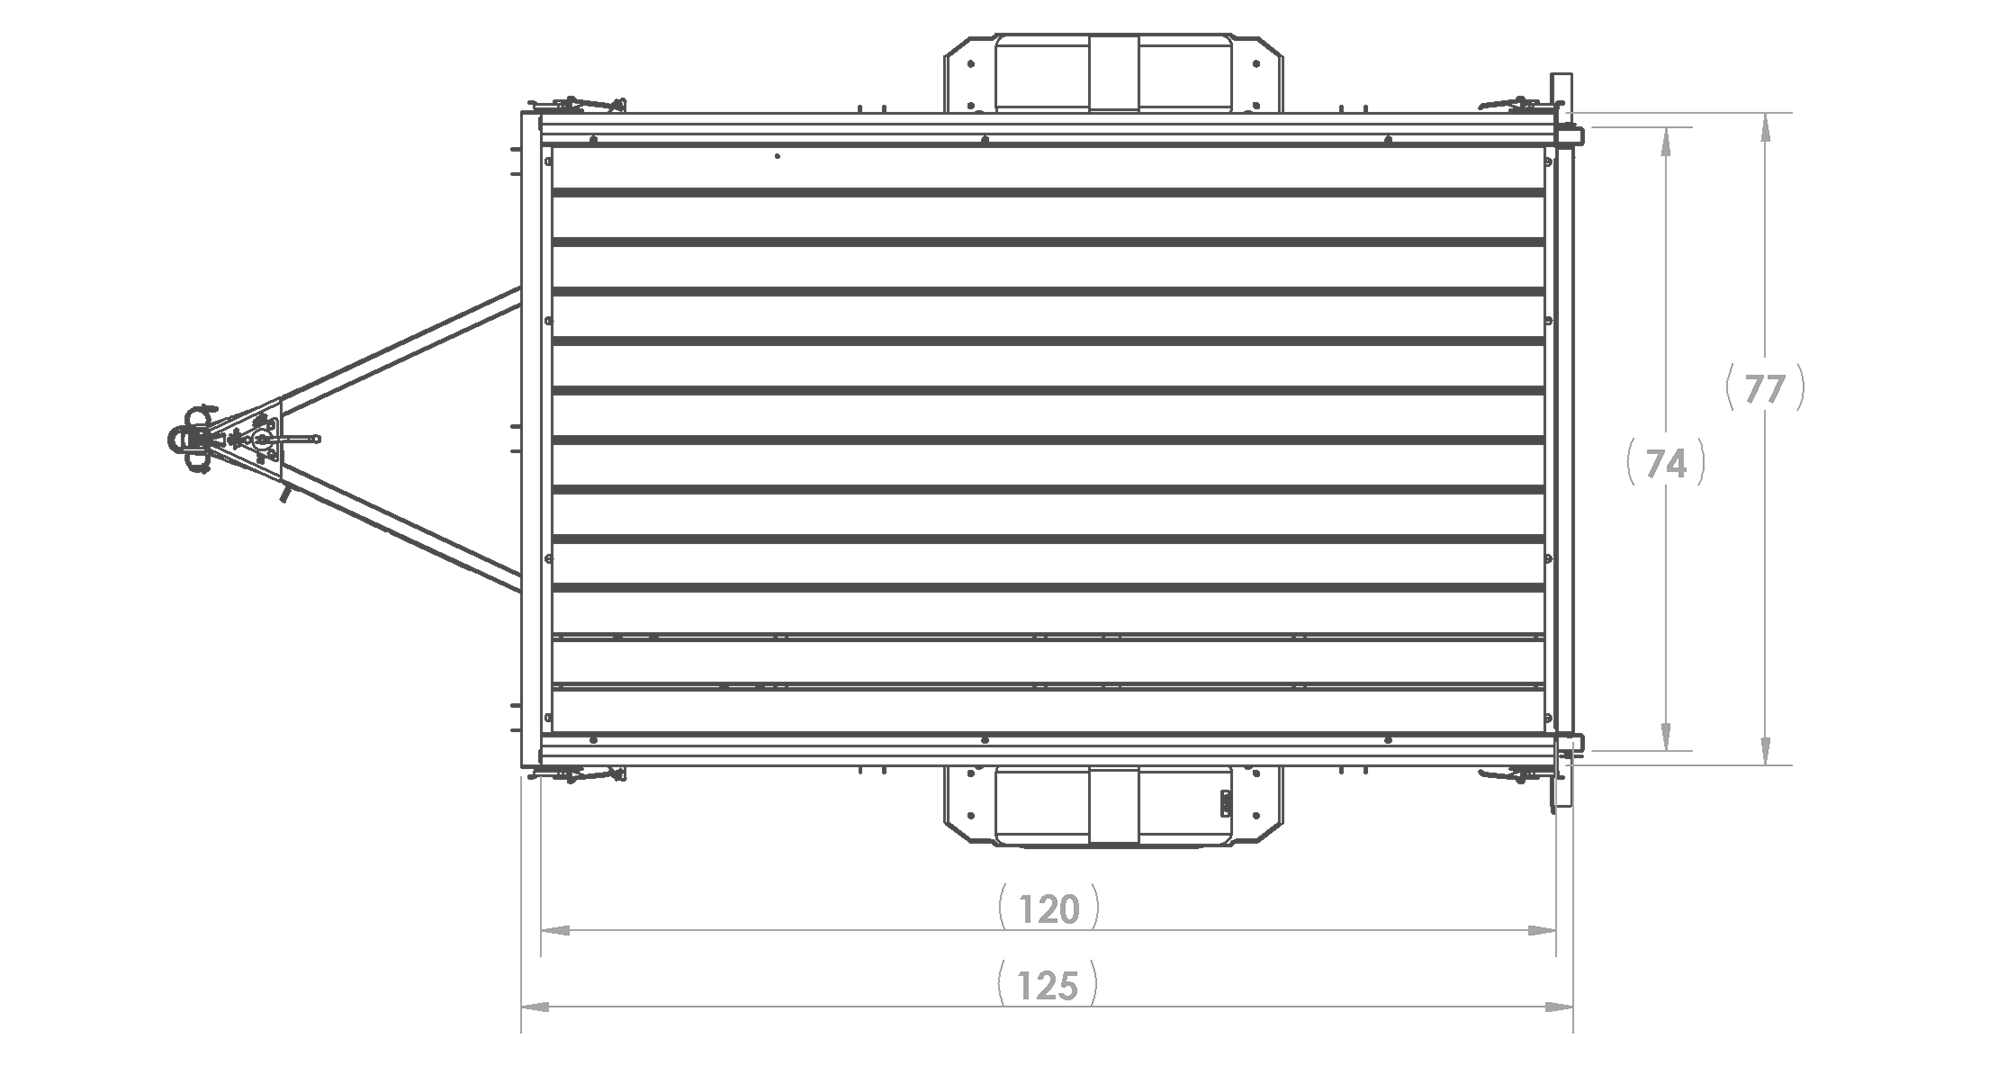 Karavan Trailer's 6x10ft. Steel Utility Trailer, Top View Measurement